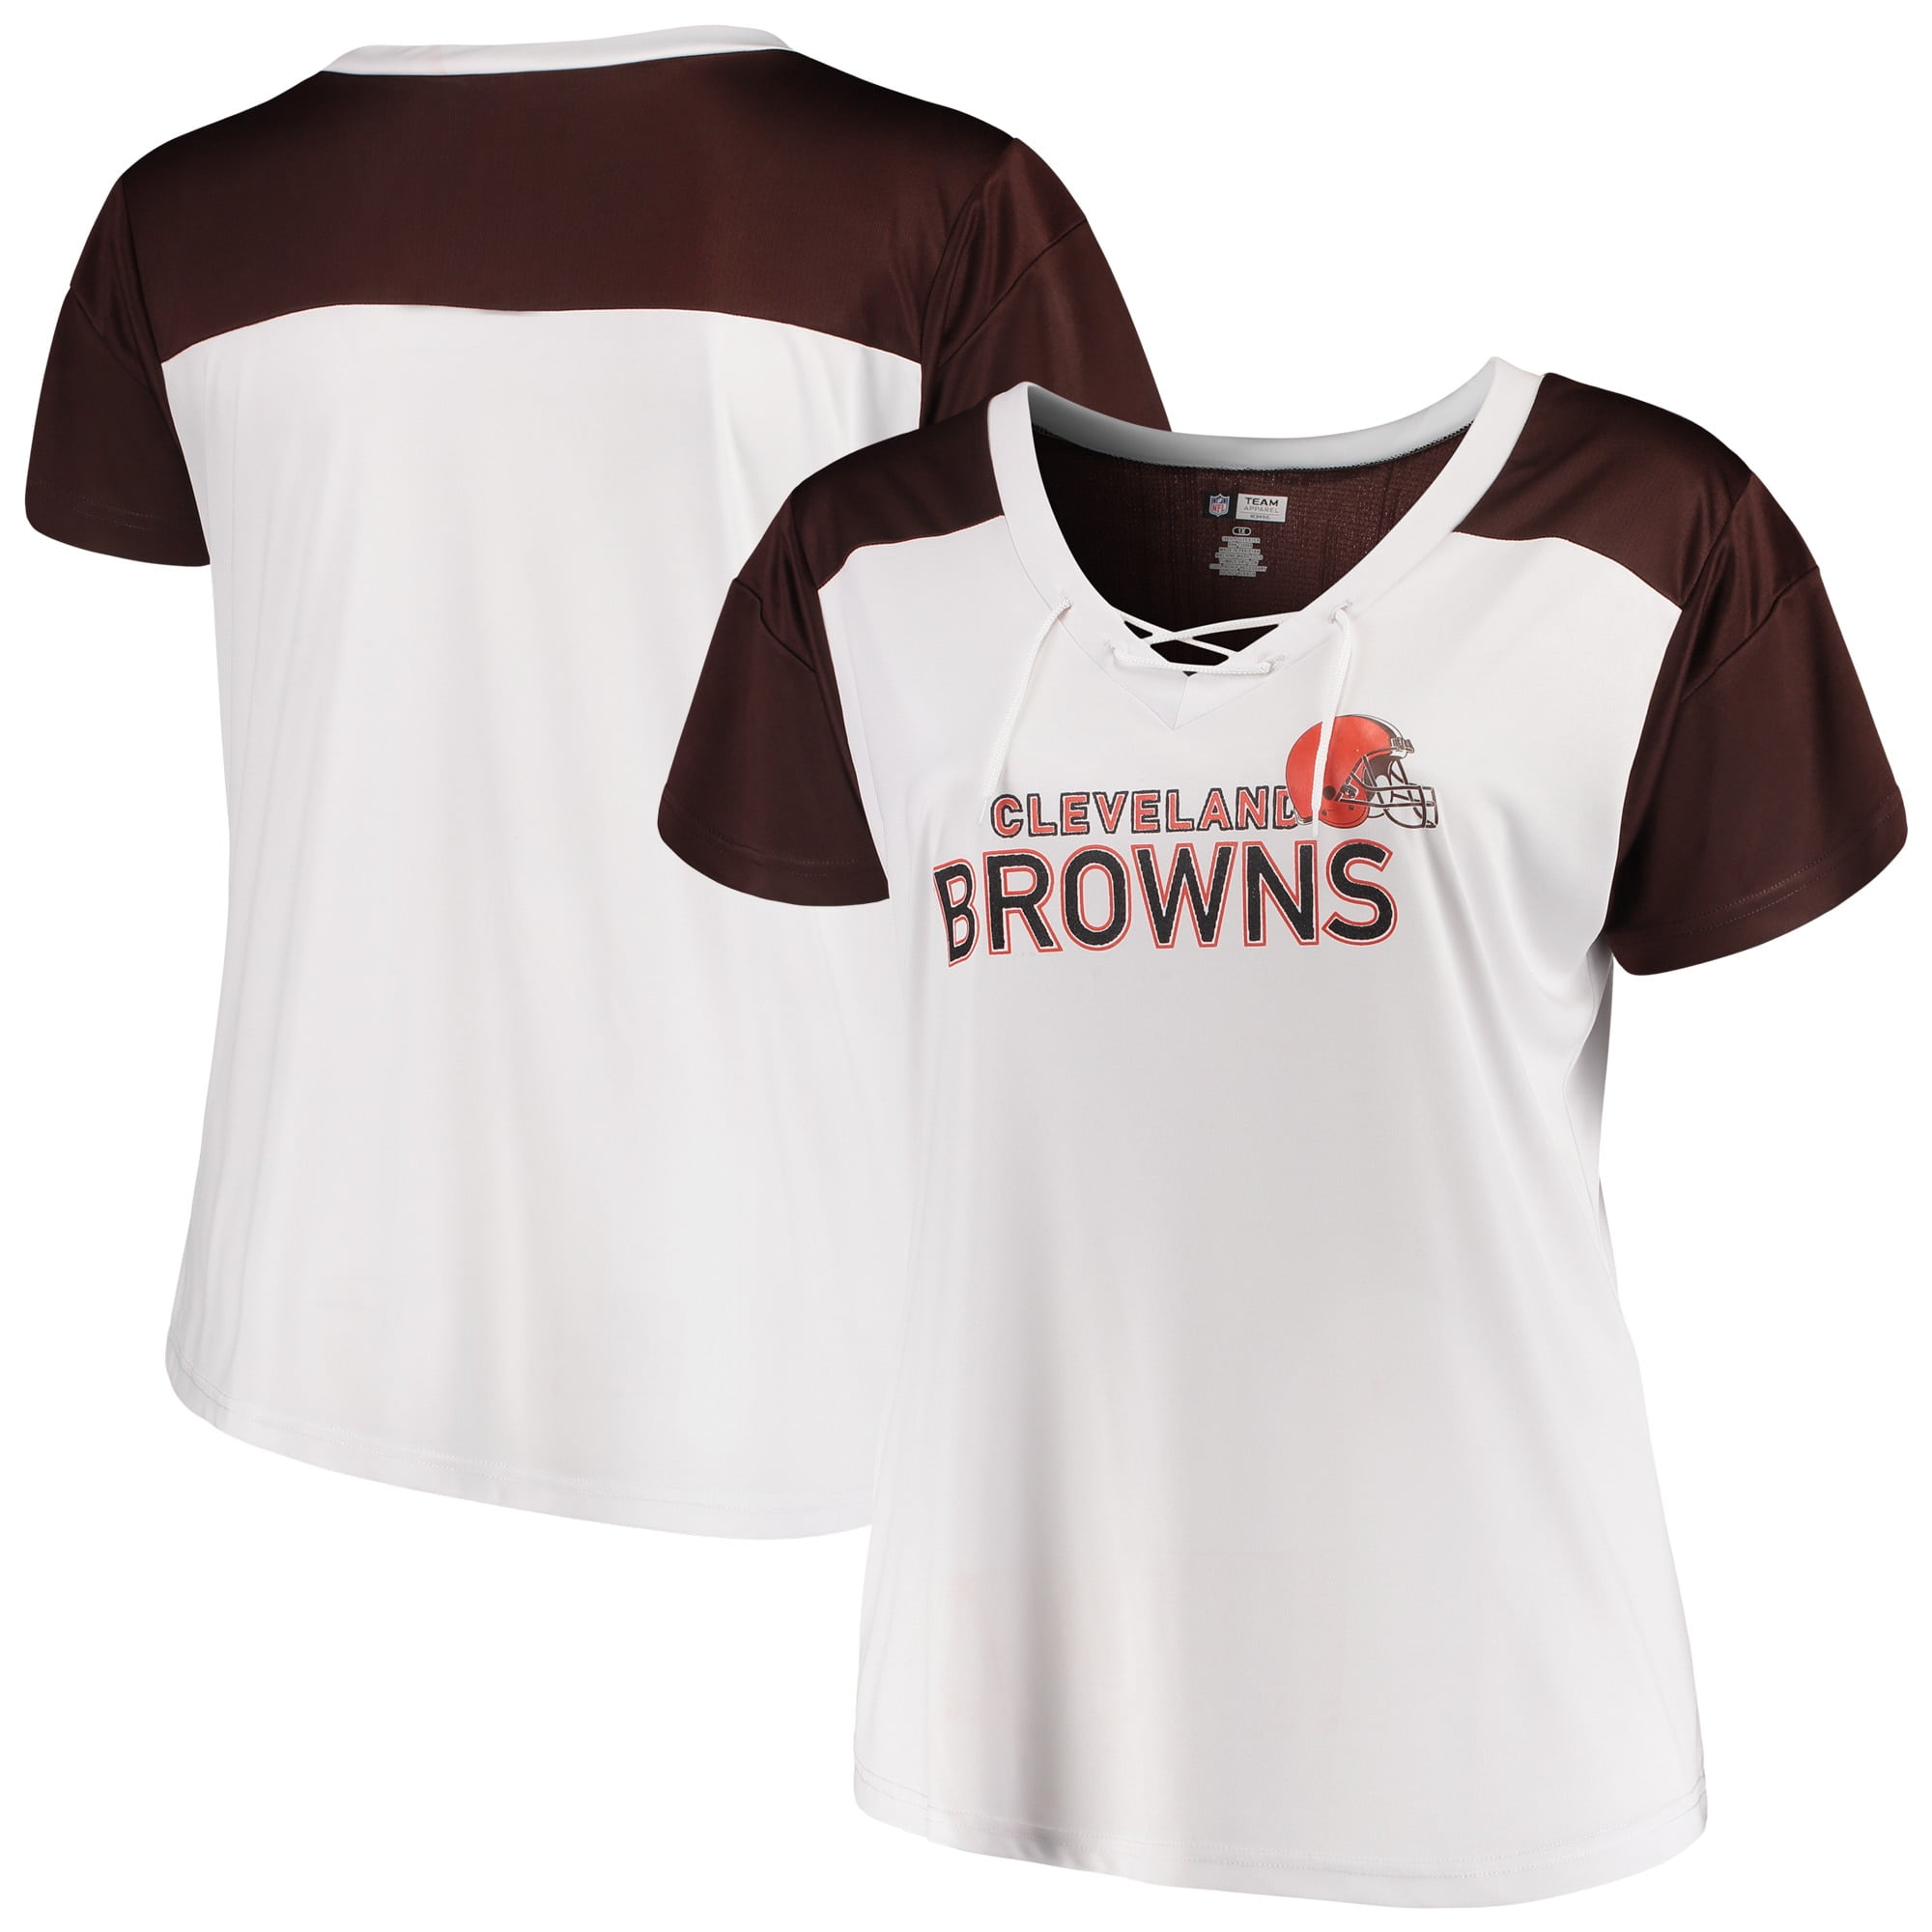 cleveland browns women's t shirt